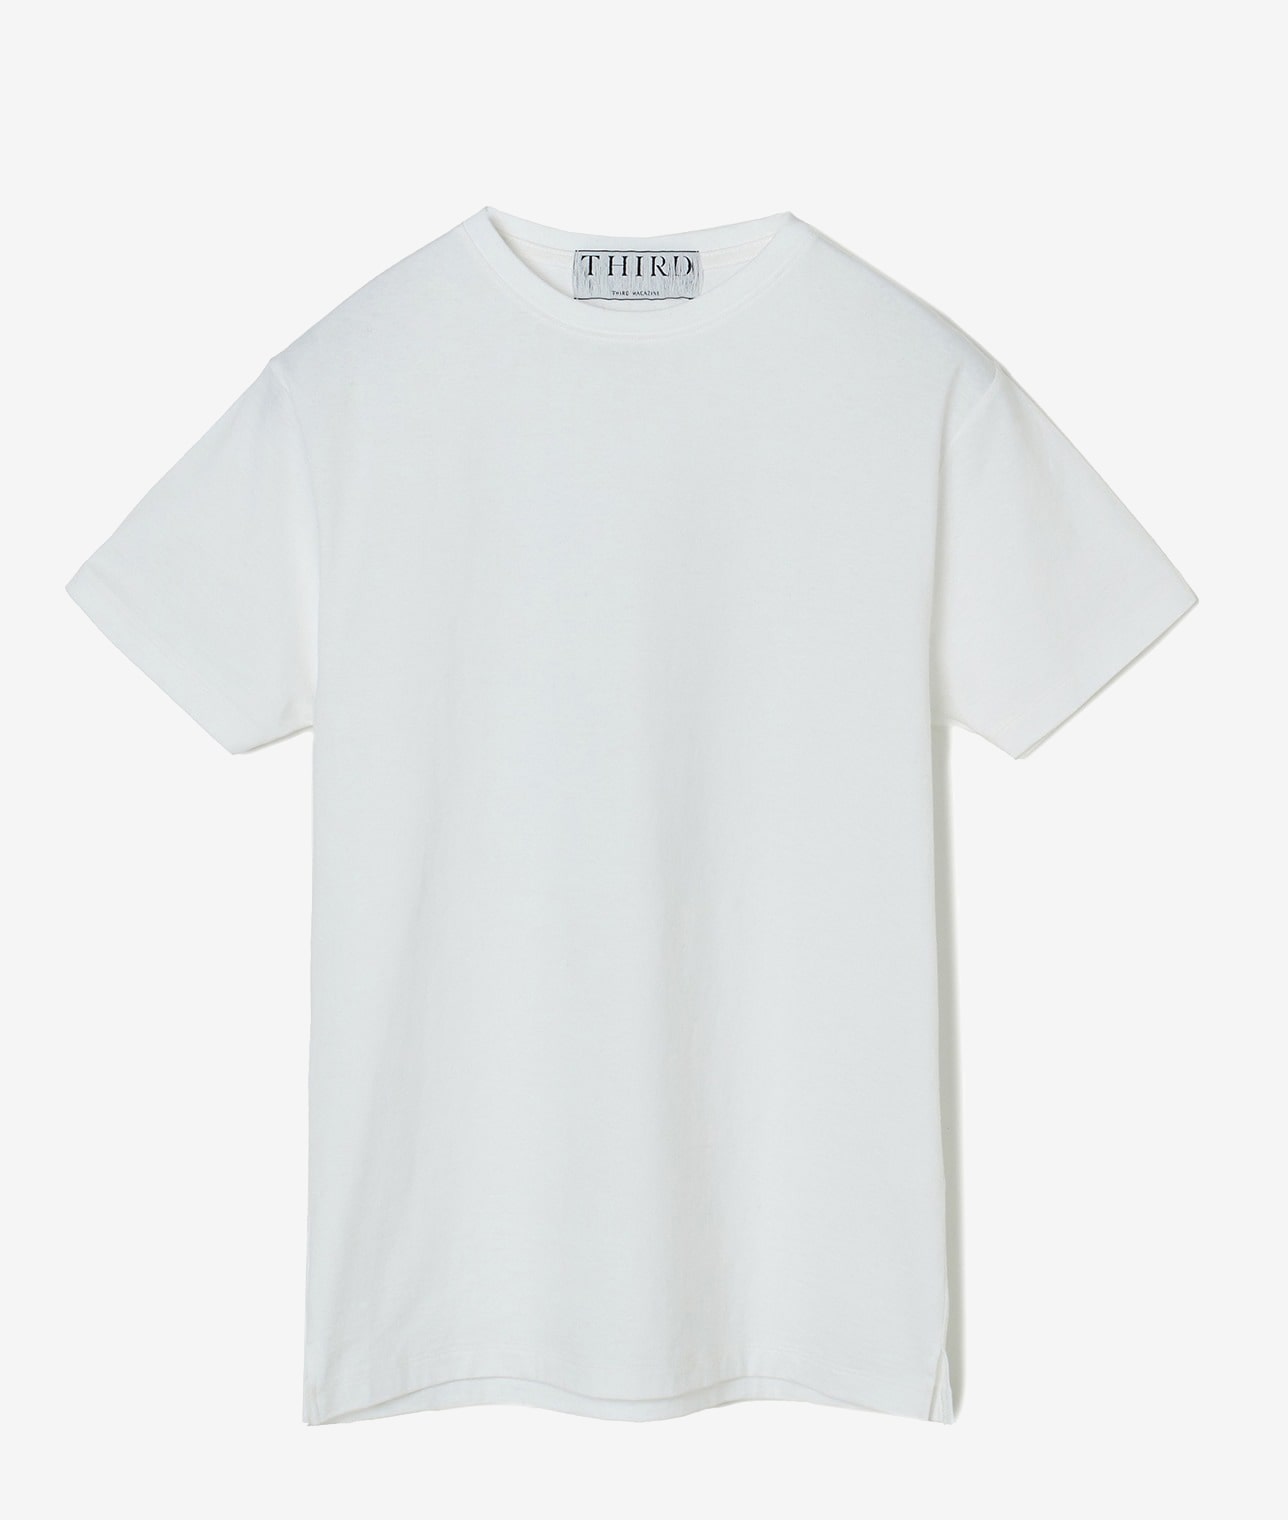 【メルローズ50周年】モノグラムプリントパックTシャツ 詳細画像 ホワイト 1